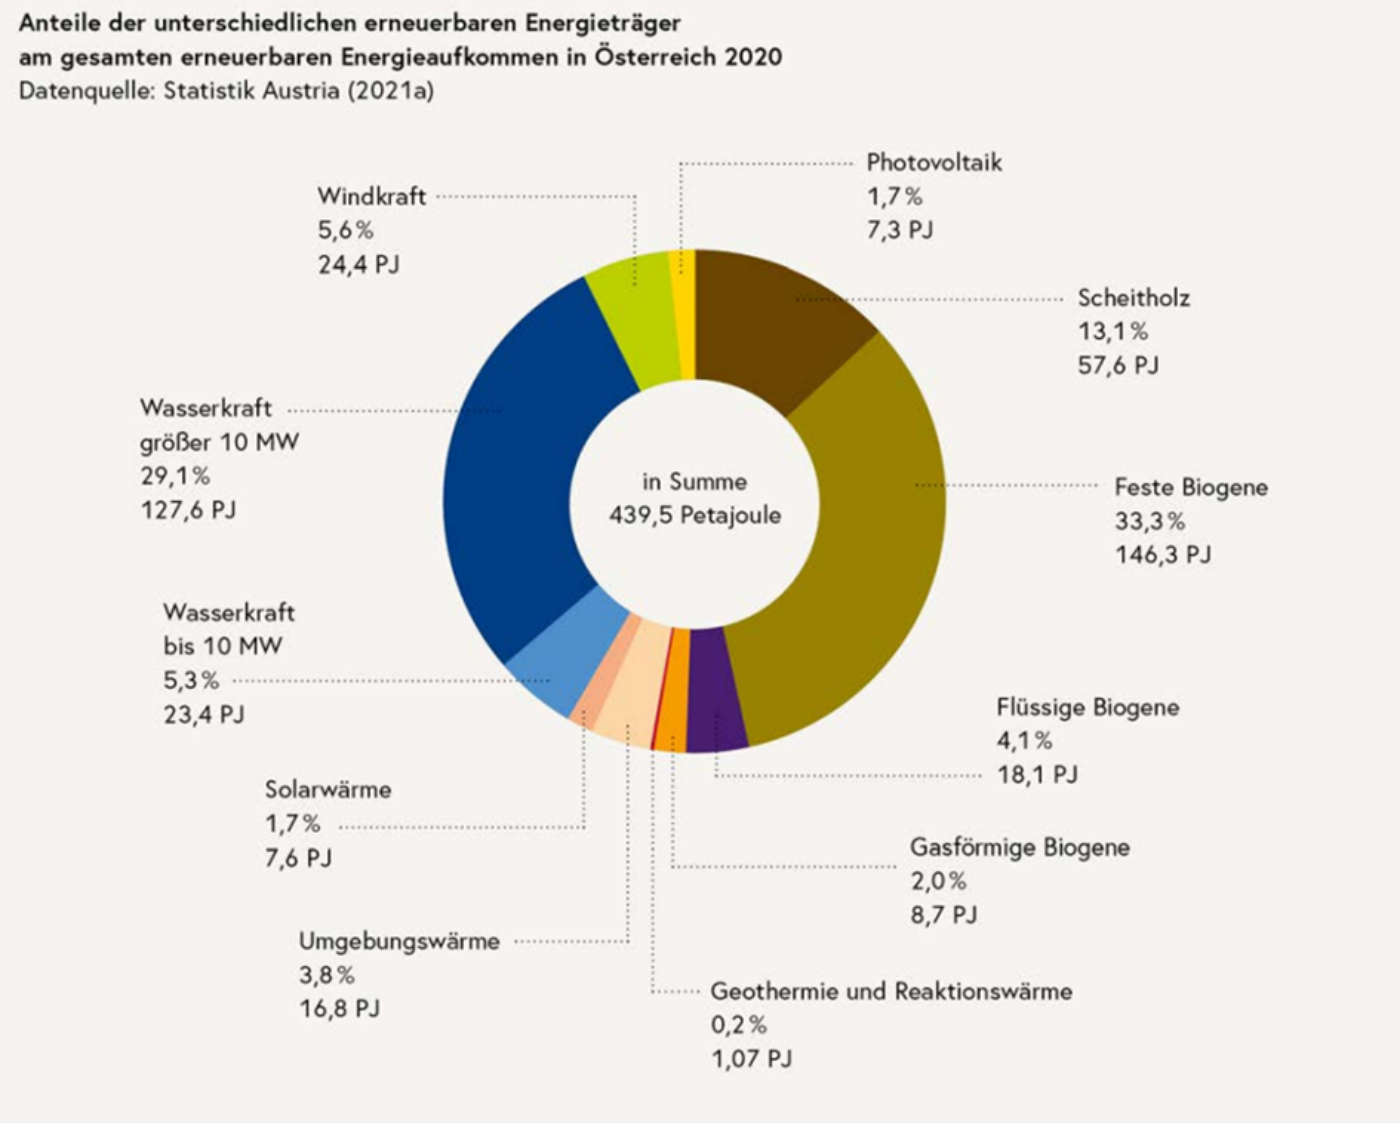 Infografik: Anteile der unterschiedlichen erneuerbaren Energieträger am gesamten erneuerbaren Energieaufkommen in Österreich 2020. Datenquelle Statistik Austria. Feste Biogene 33,3 %, Wasserkraft über 10 Megawatt 29,1 %, Scheitholz 13,1 %, Windkraft 5,6 %, Wasserkraft bis 10 Megawatt 5,3 %, weitere kleine.